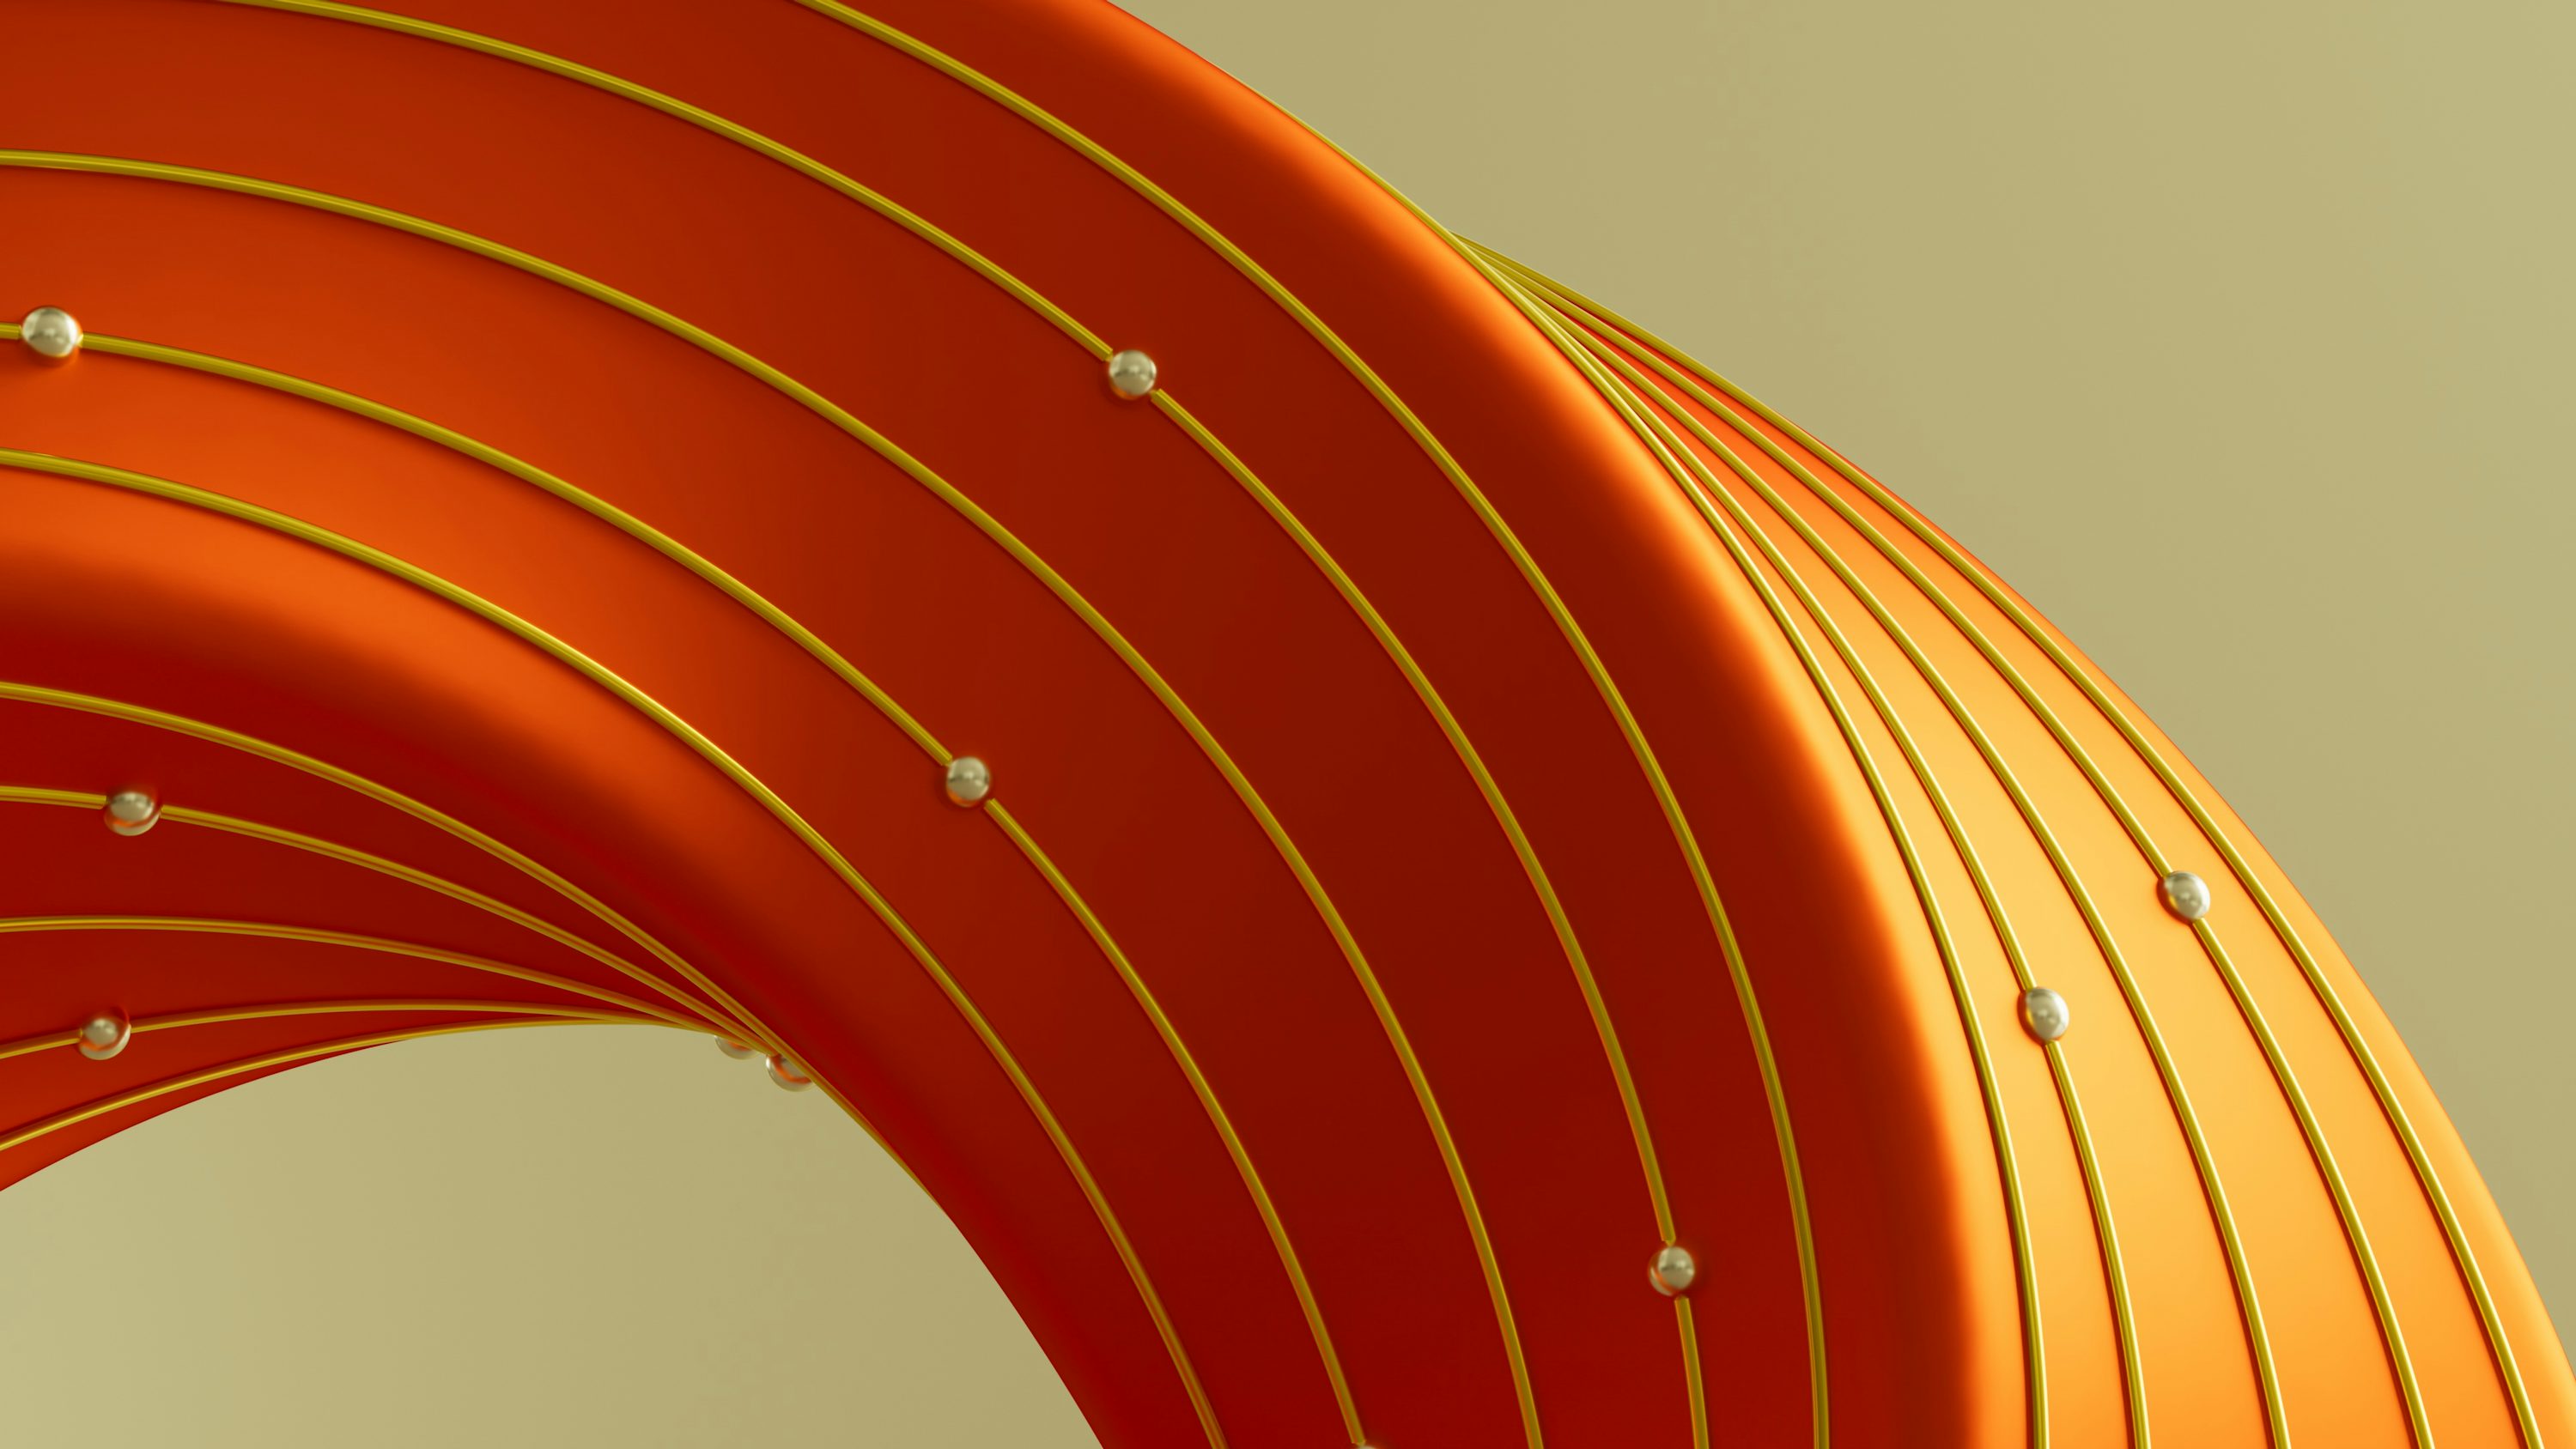 Ein abstraktes Bild eines gekrümmten orangefarbenen Objekts